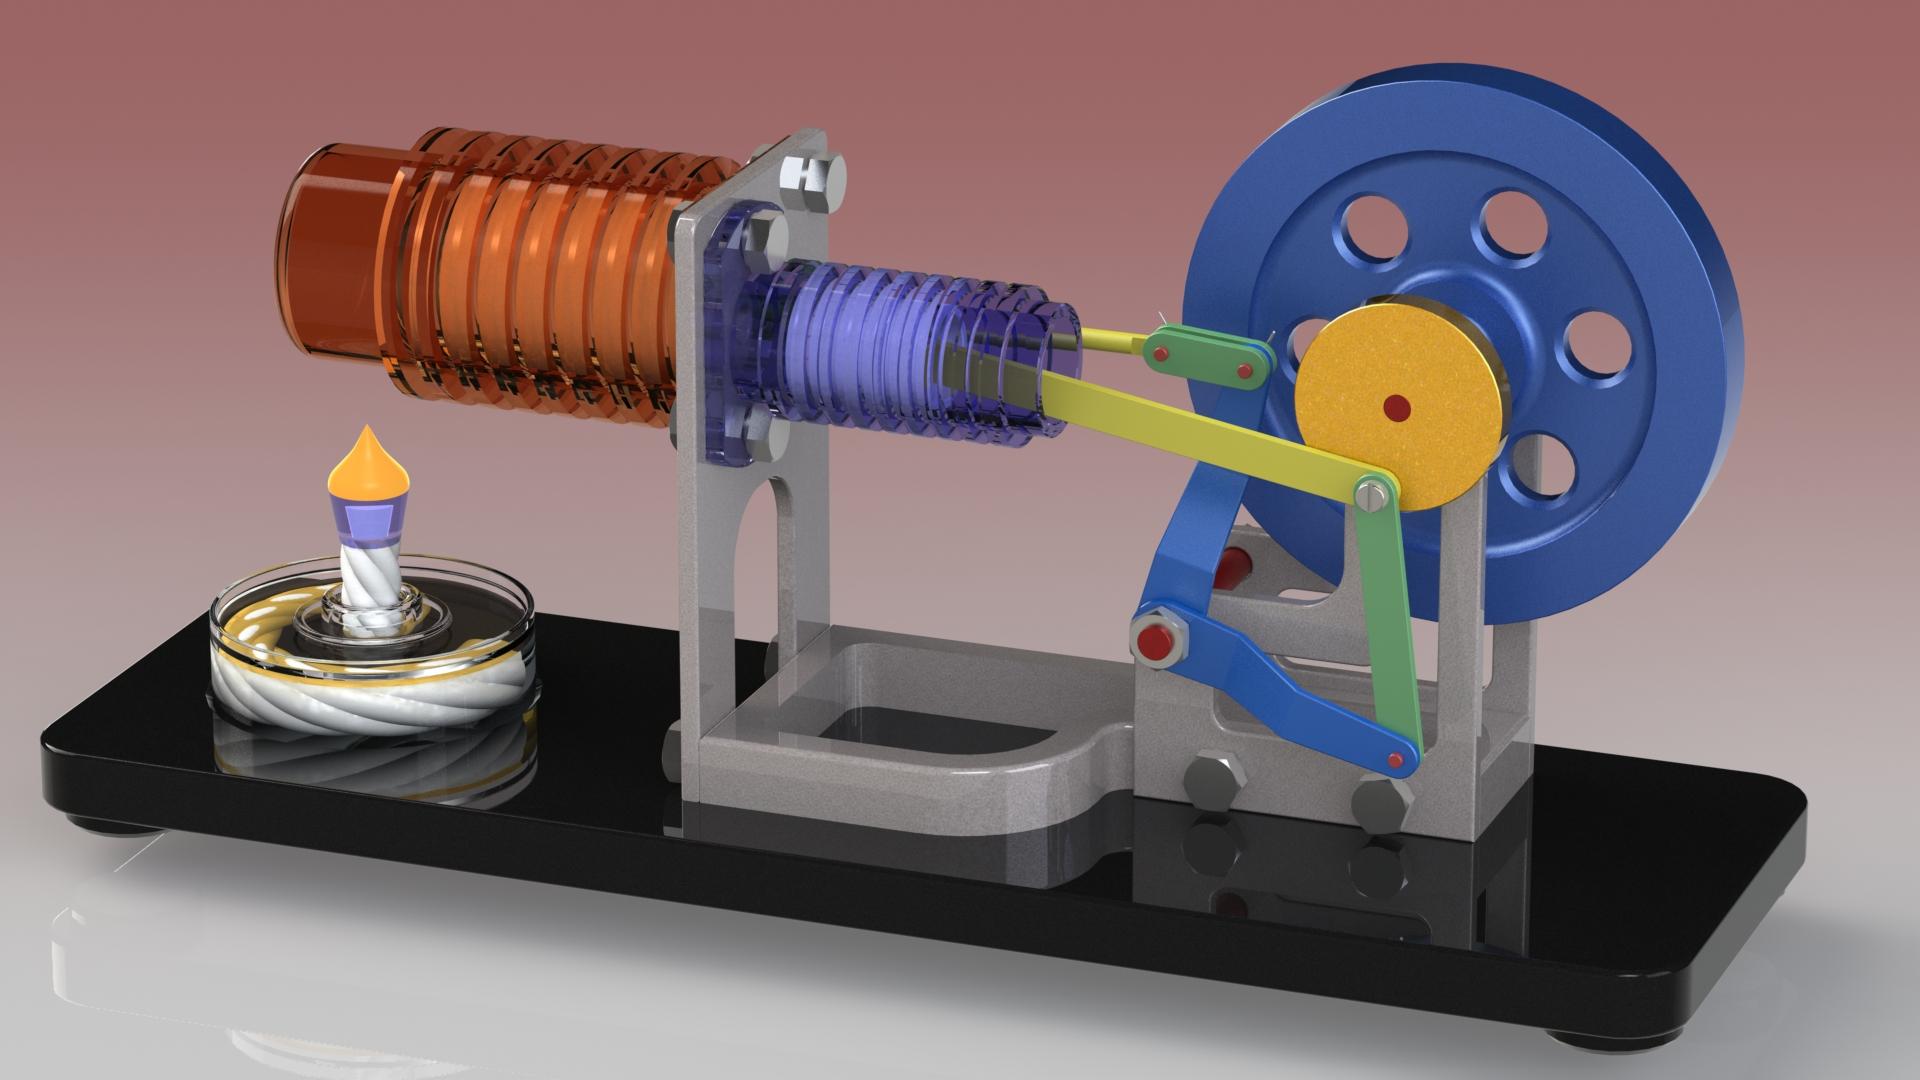 Stirling Motor - Hot Air Motor (Motor Stirling - Motor de Aire Caliente) 3d model